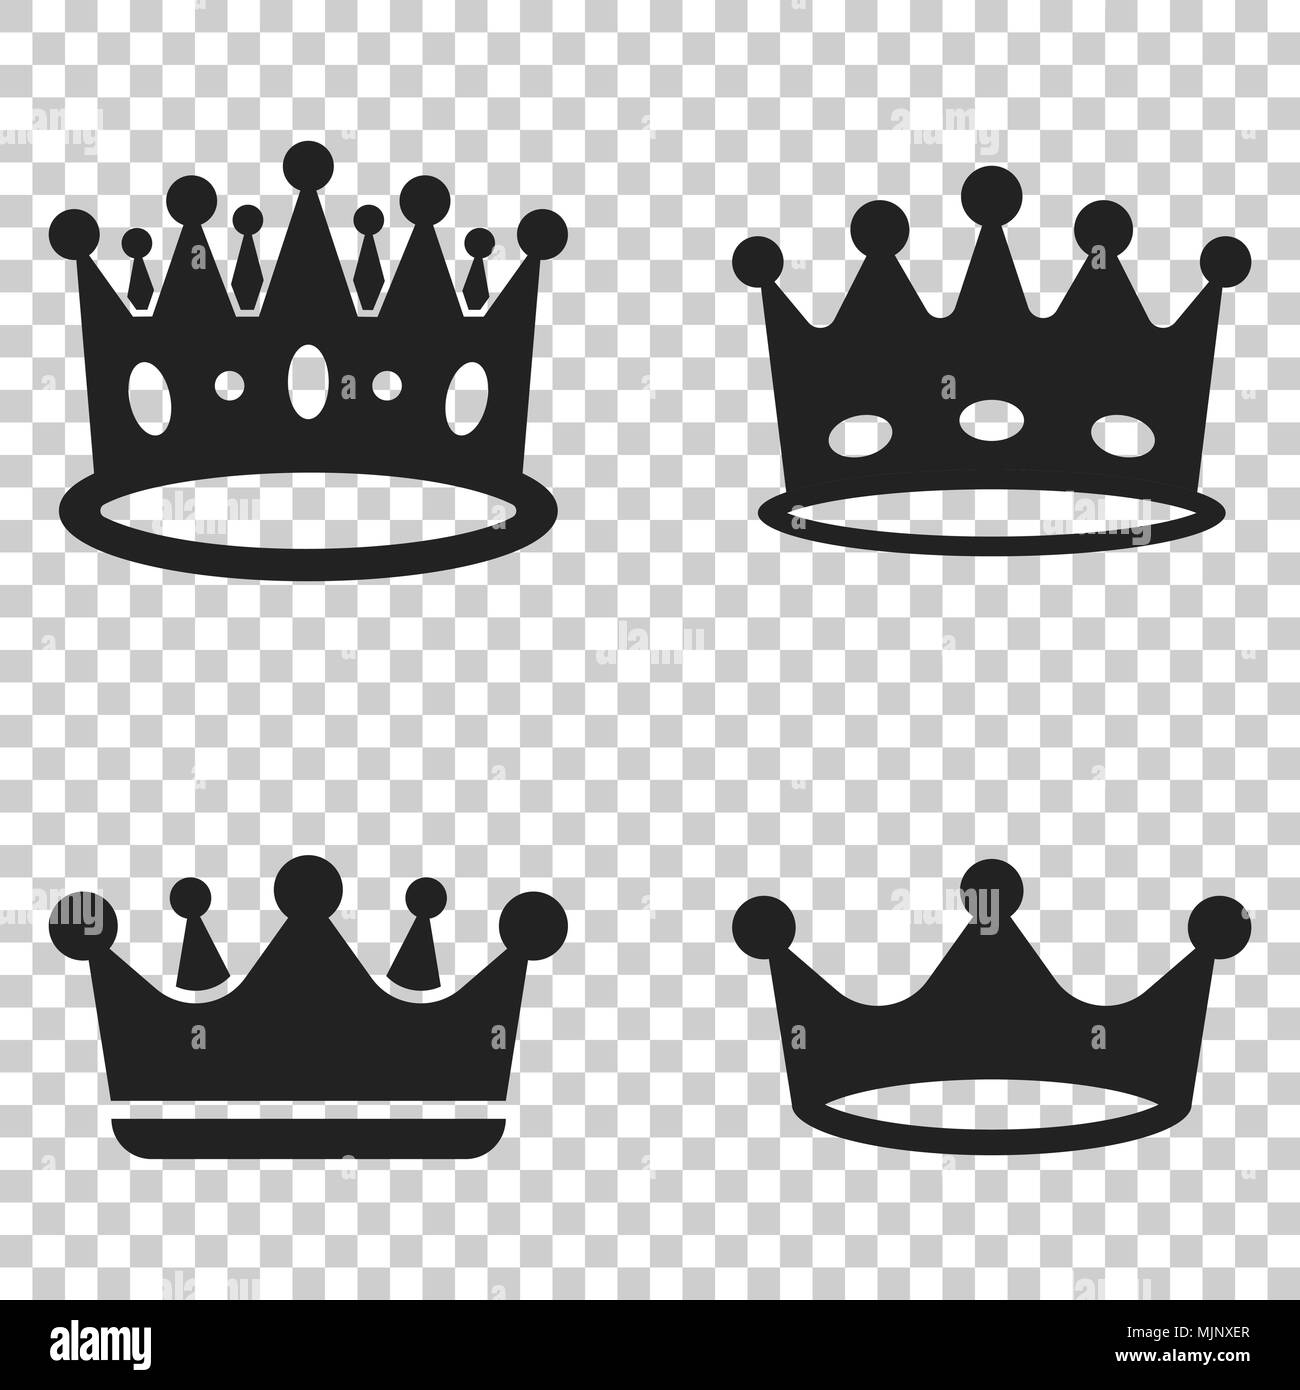 Krone Diadem Vektor Icon Im Flachen Stil Royalty Krone Abbildung Auf Isolierte Transparenten Hintergrund Konig Prinzessin Royalty Konzept Stock Vektorgrafik Alamy